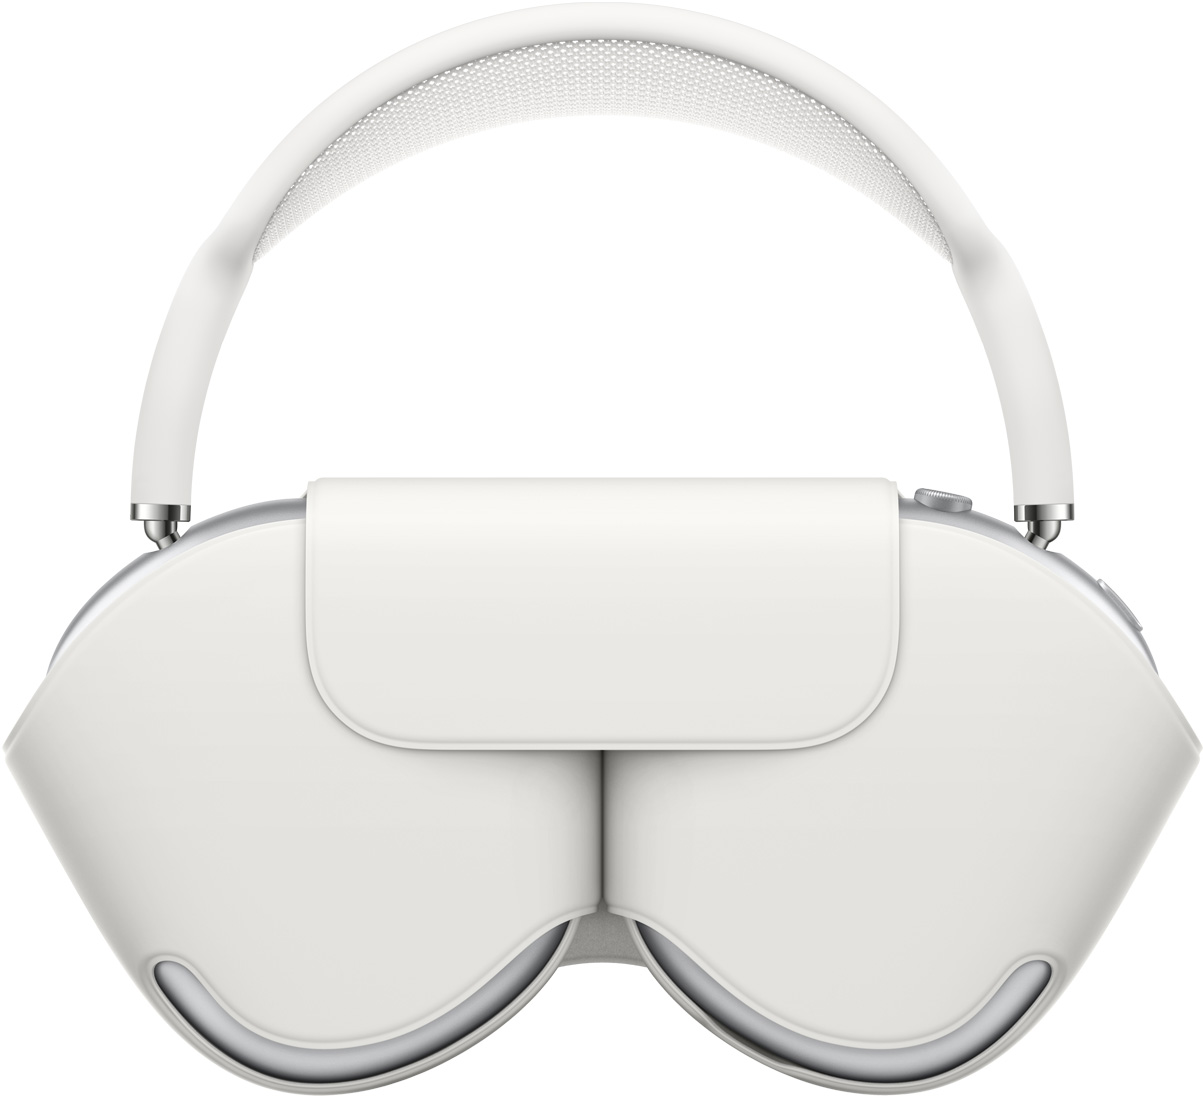 圖像顯示放進智慧型耳筒套的 AirPods Max。